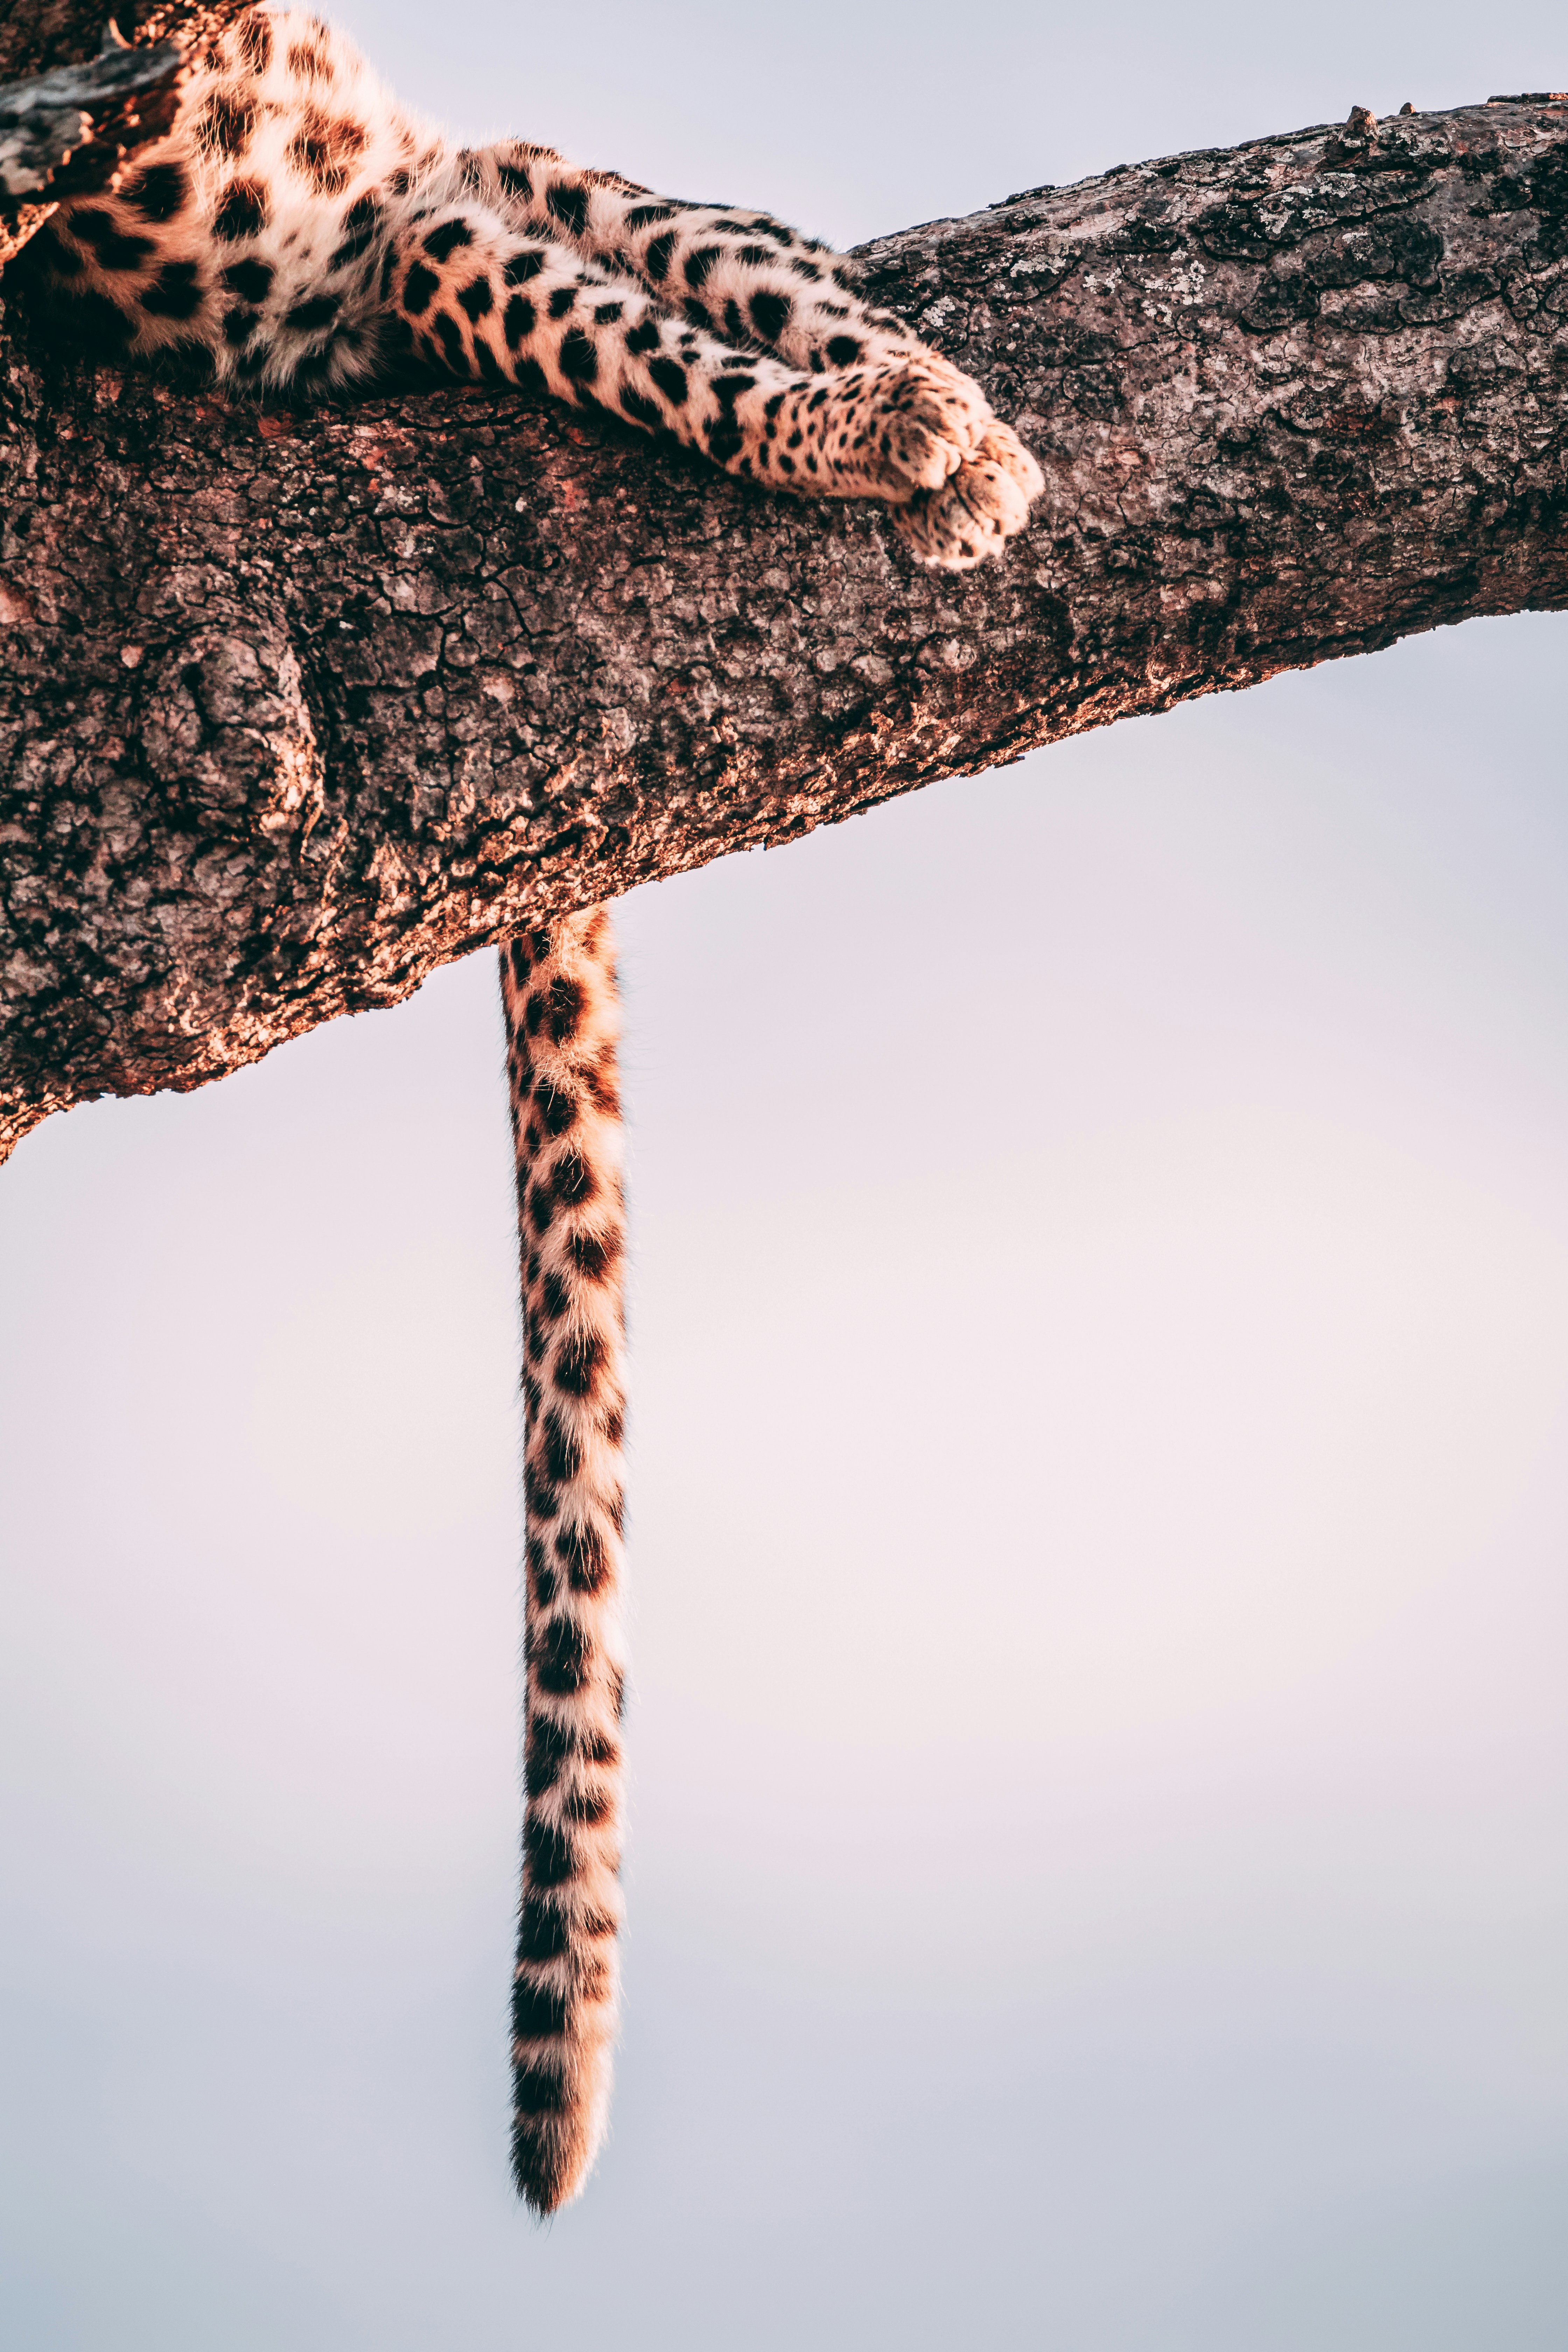 Leopard sleeping in a tree